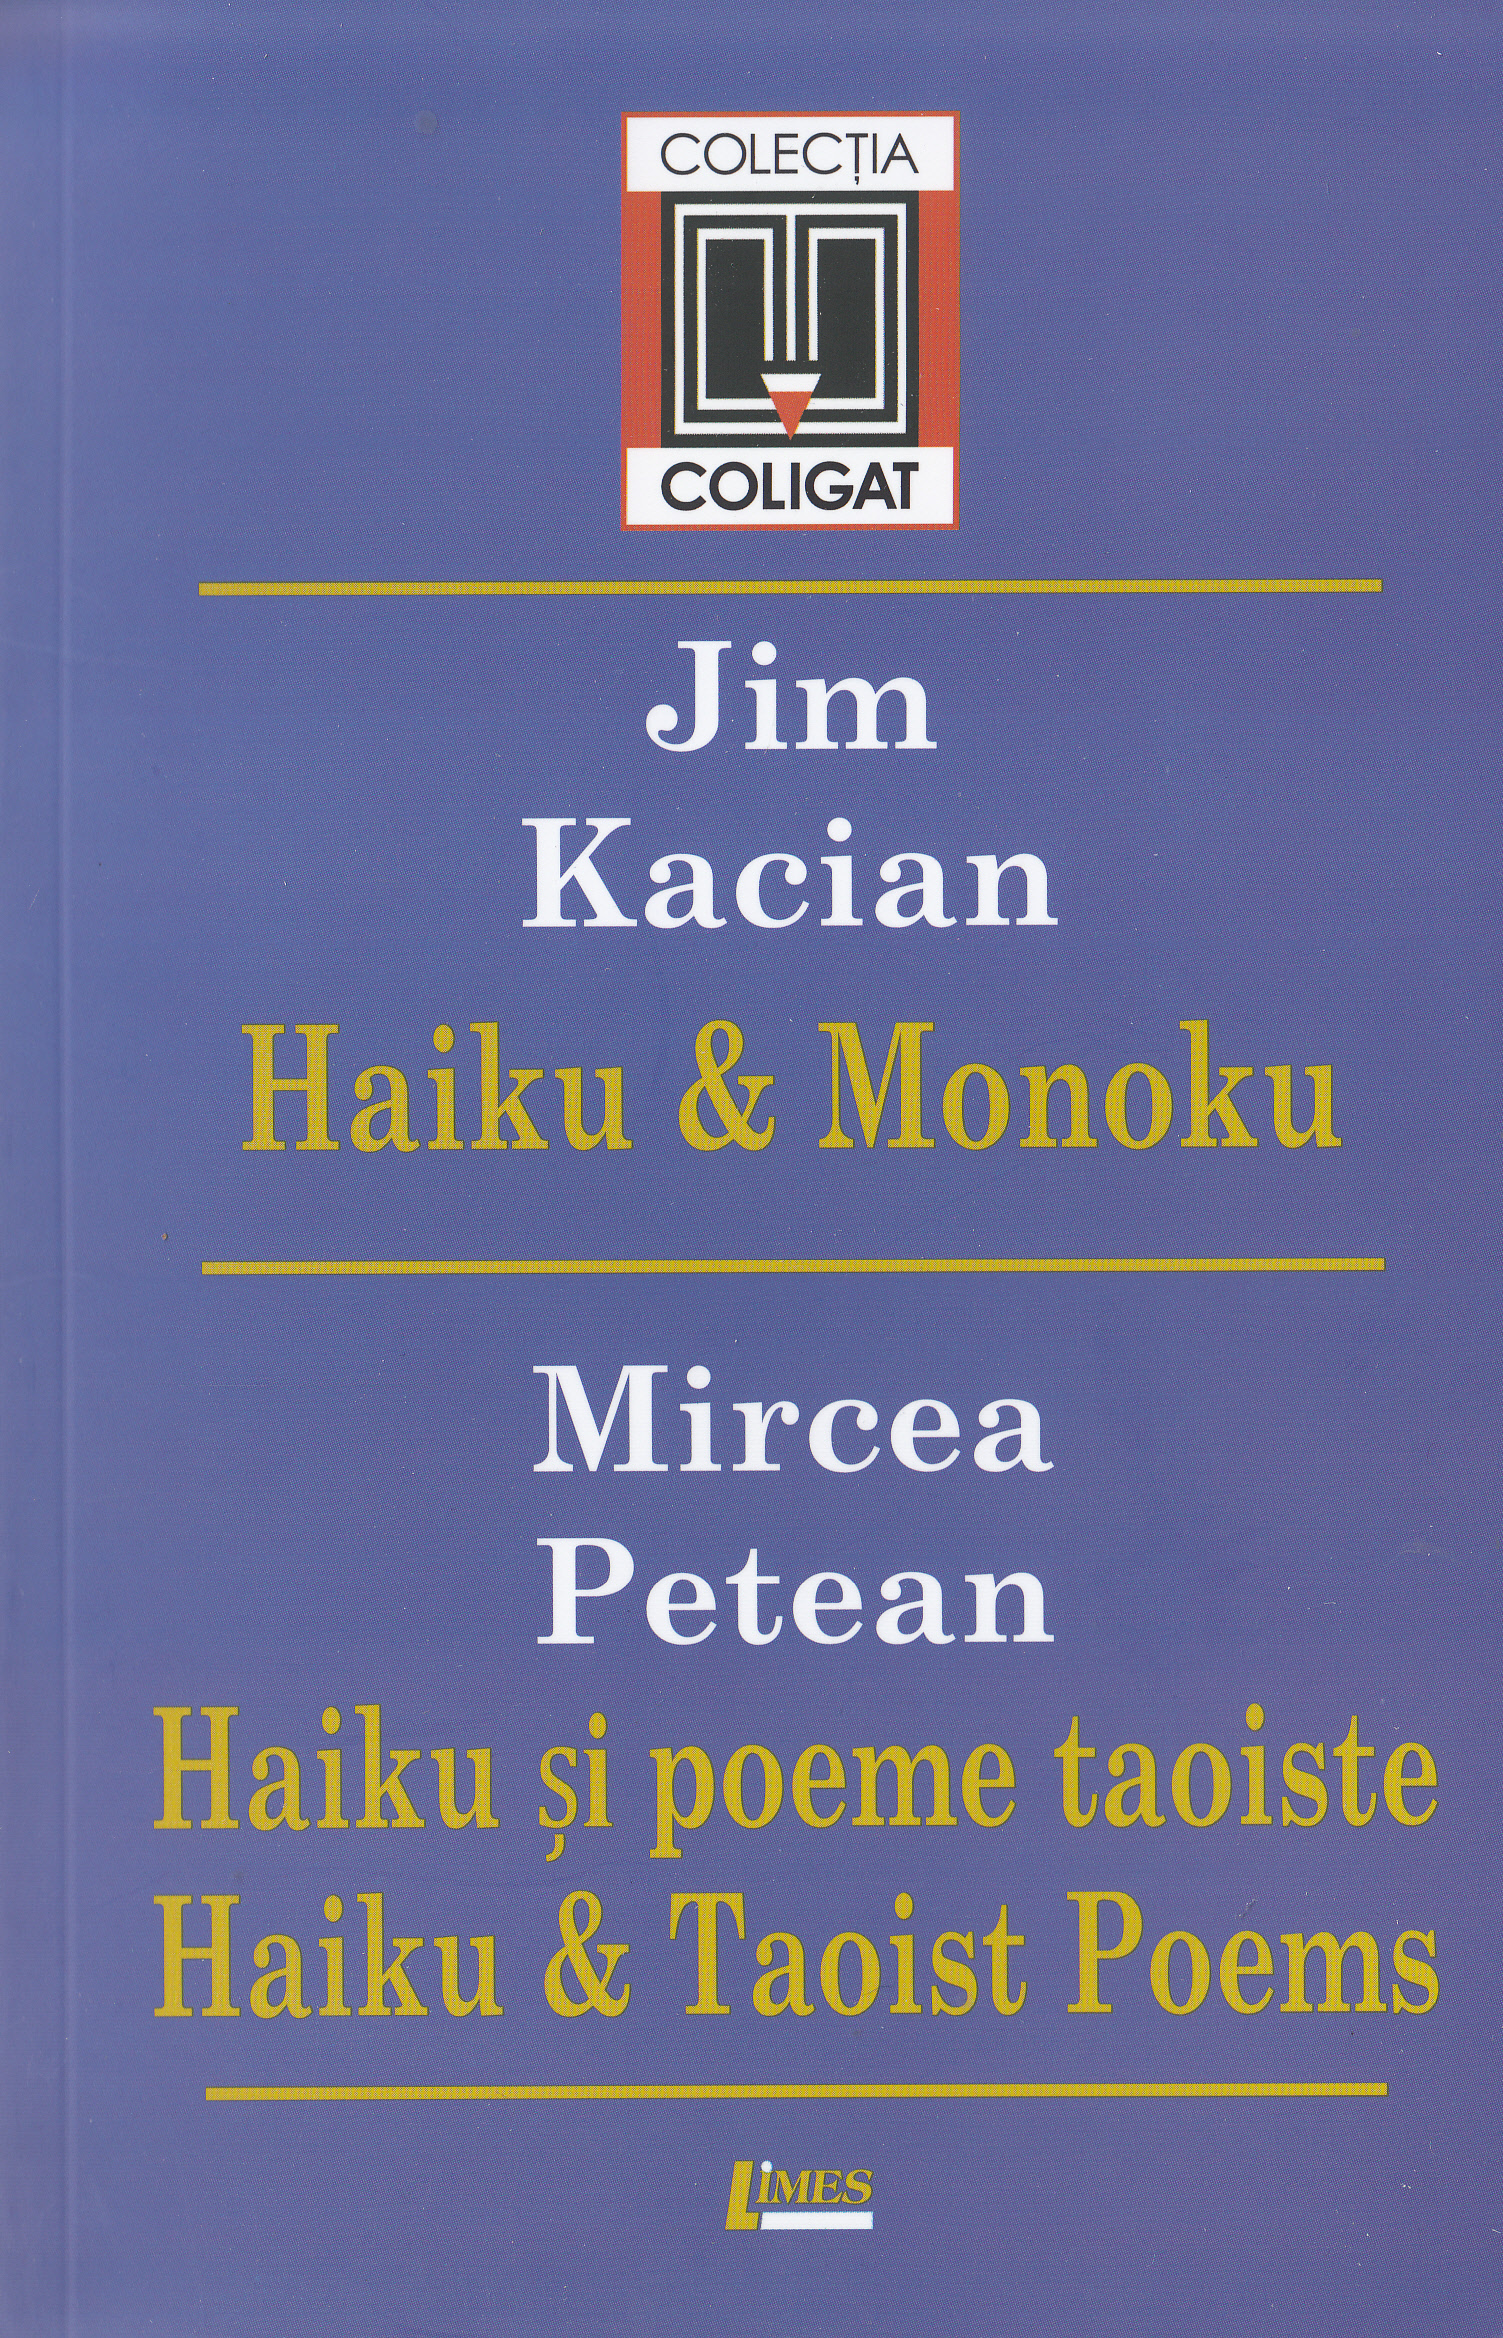 Haiki si Monoku - Jim Kacian. Haiku si poeme taoiste - Mircea Petean